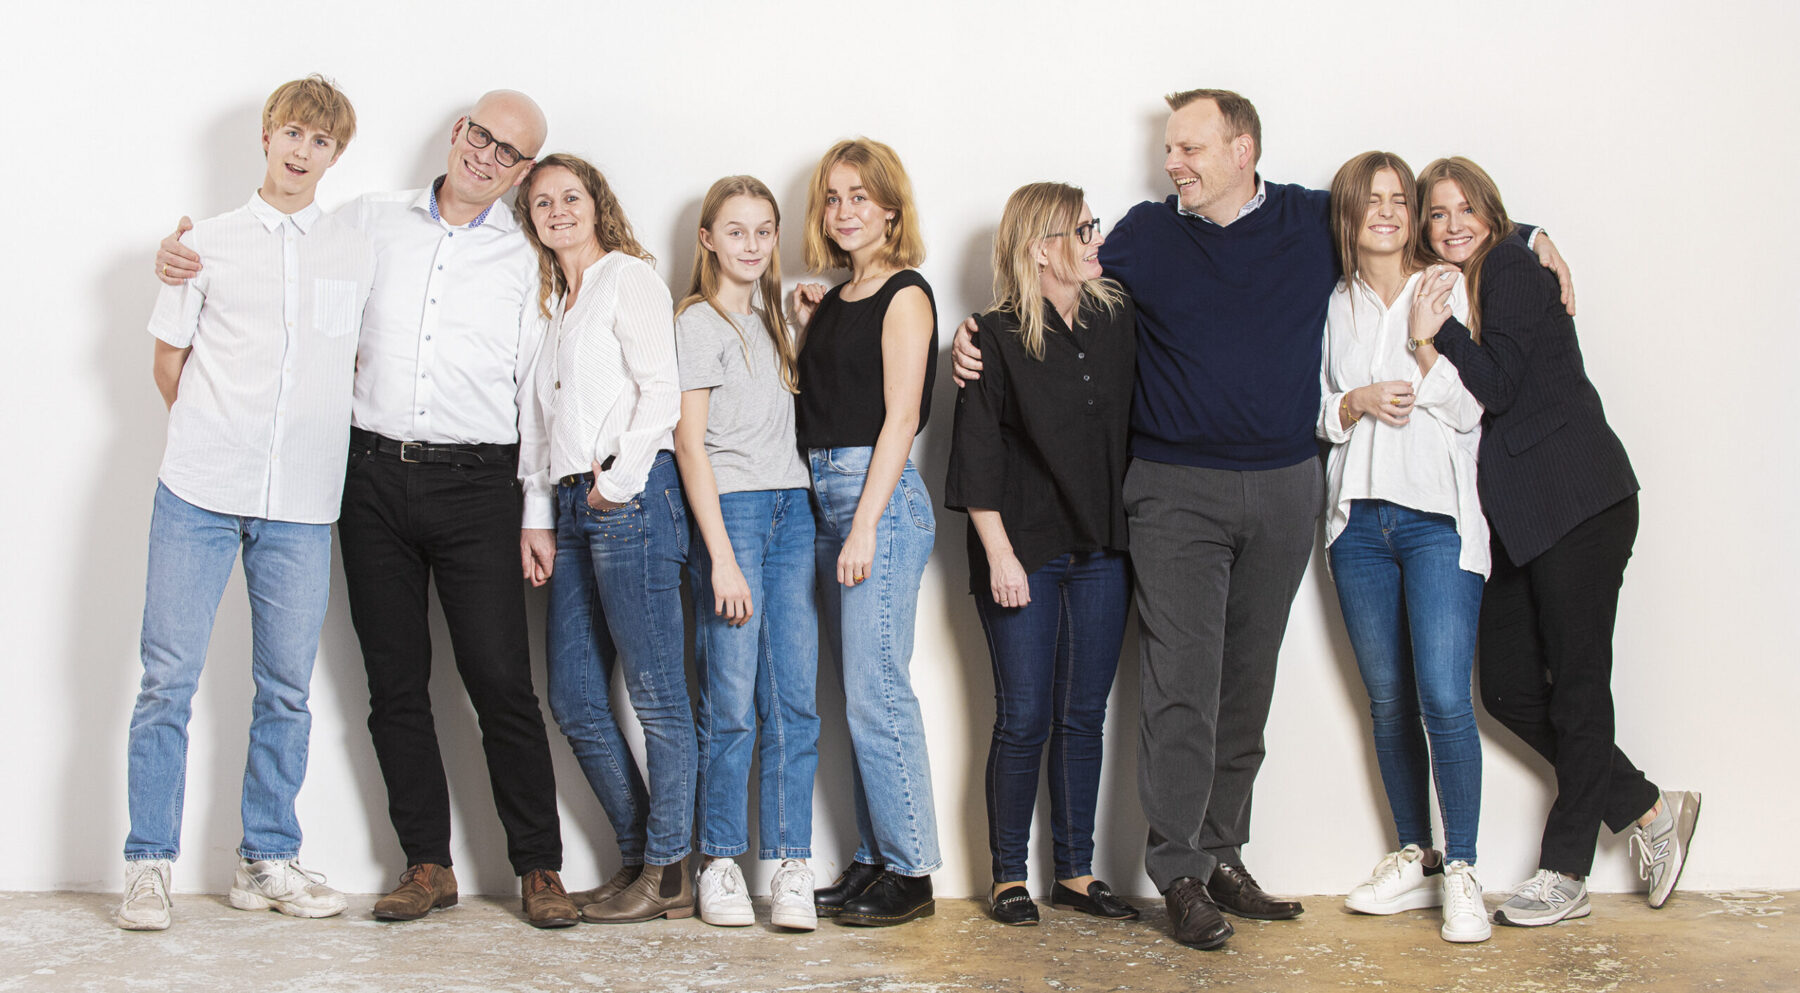 fotograf århus familieportræt i studie